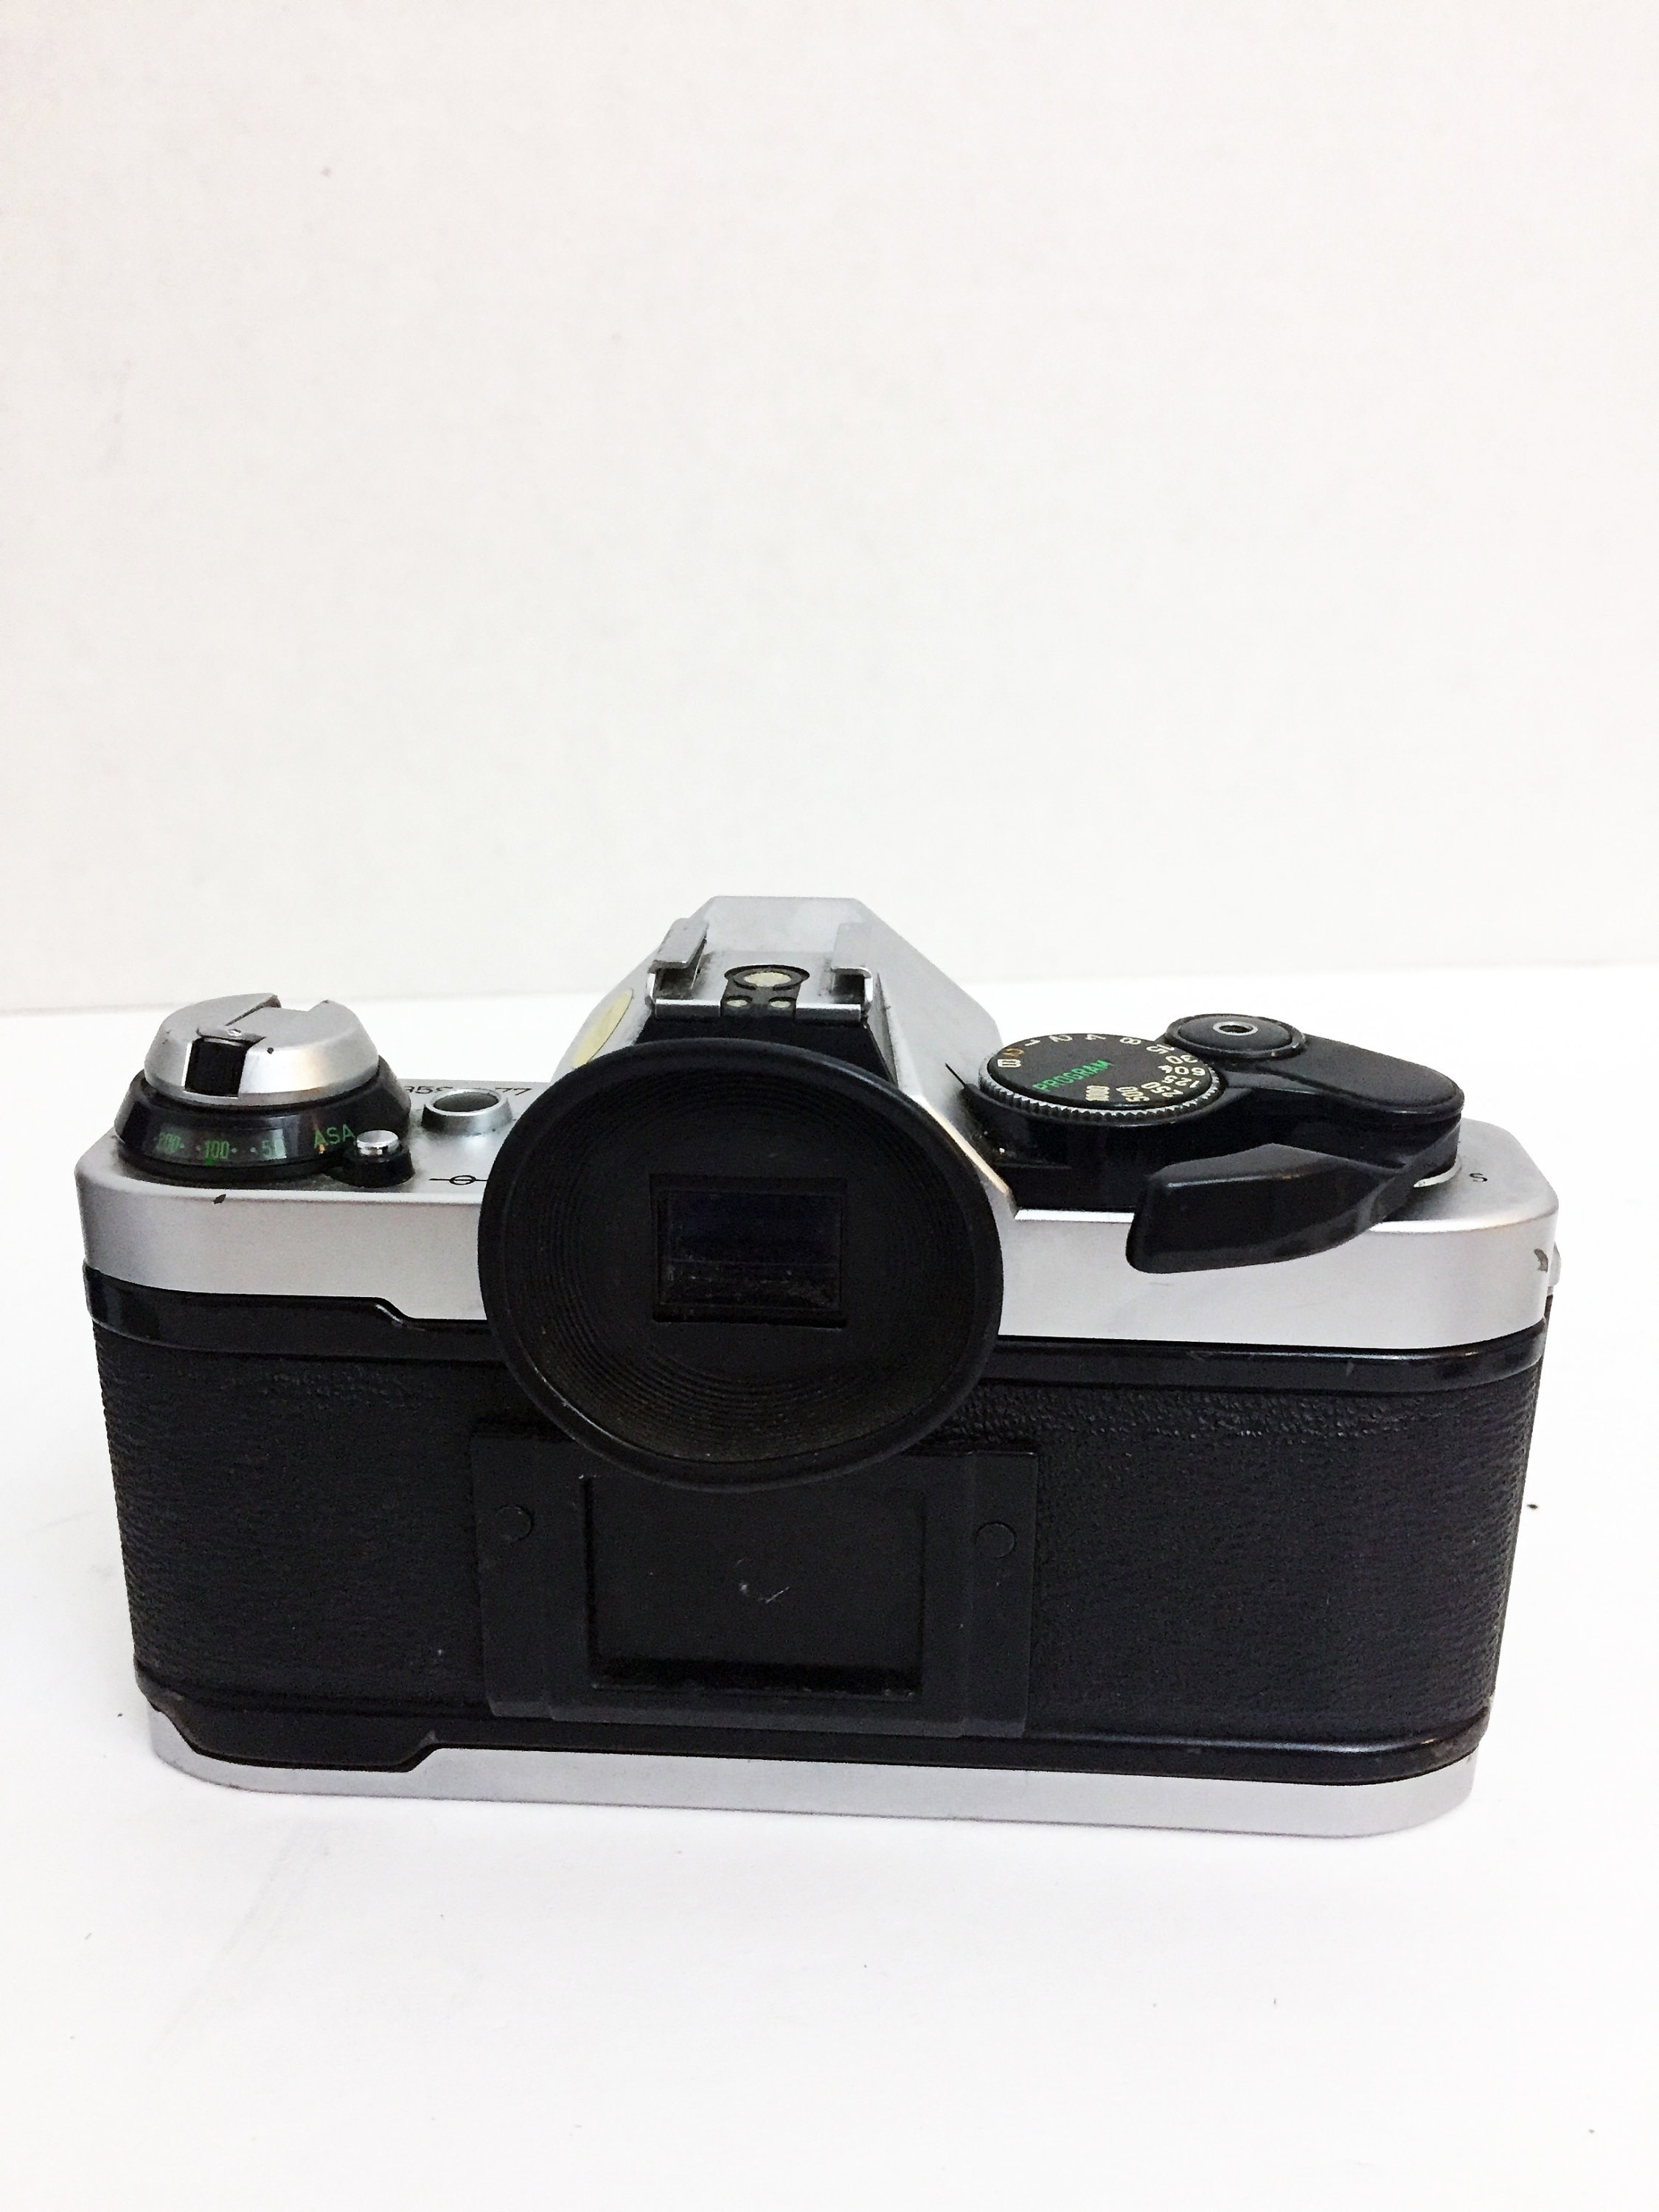 Vintage Canon AE-1 Program 50mm F/1.8 Kit Lens Film SLR